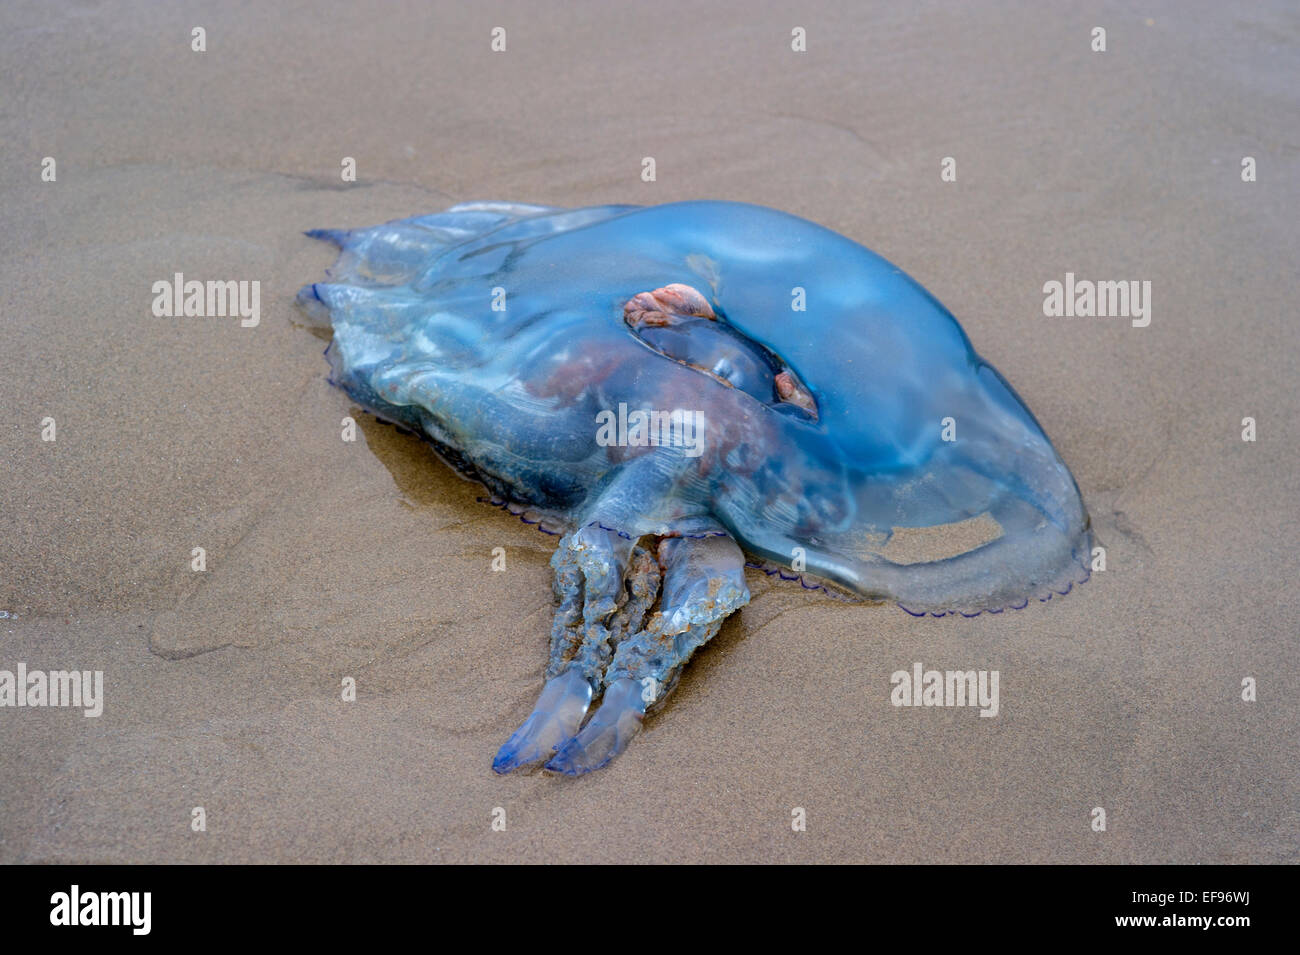 Les méduses échouées. Rhizostoma octopus échoués sur la plage dans le Nord du Pays de Galles Banque D'Images